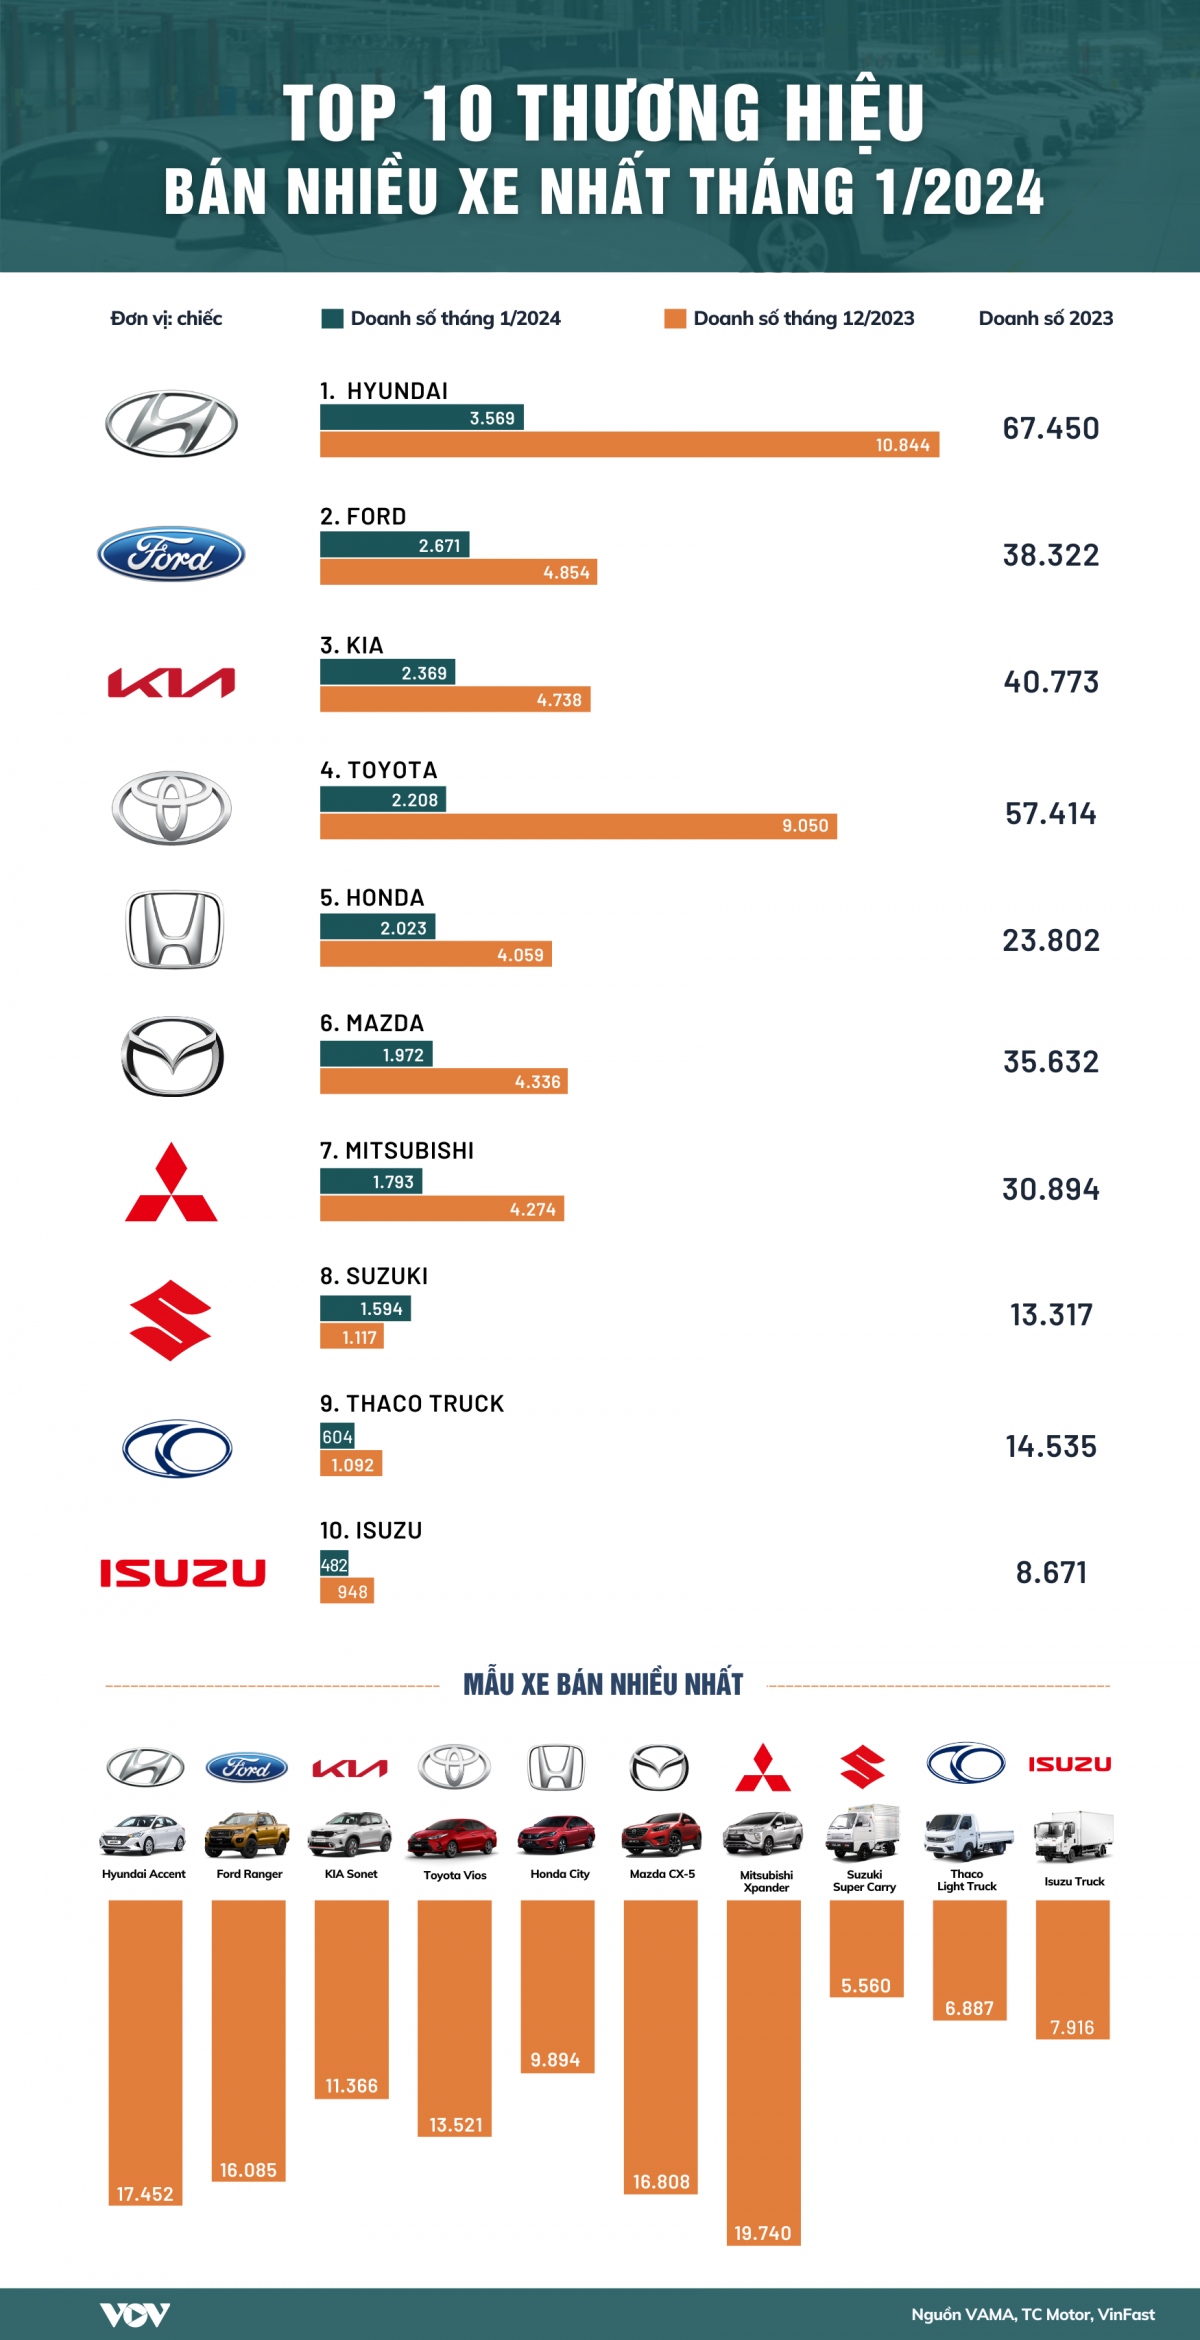 Top 10 thương hiệu xe ô tô bán chạy nhất tháng đầu năm 2024